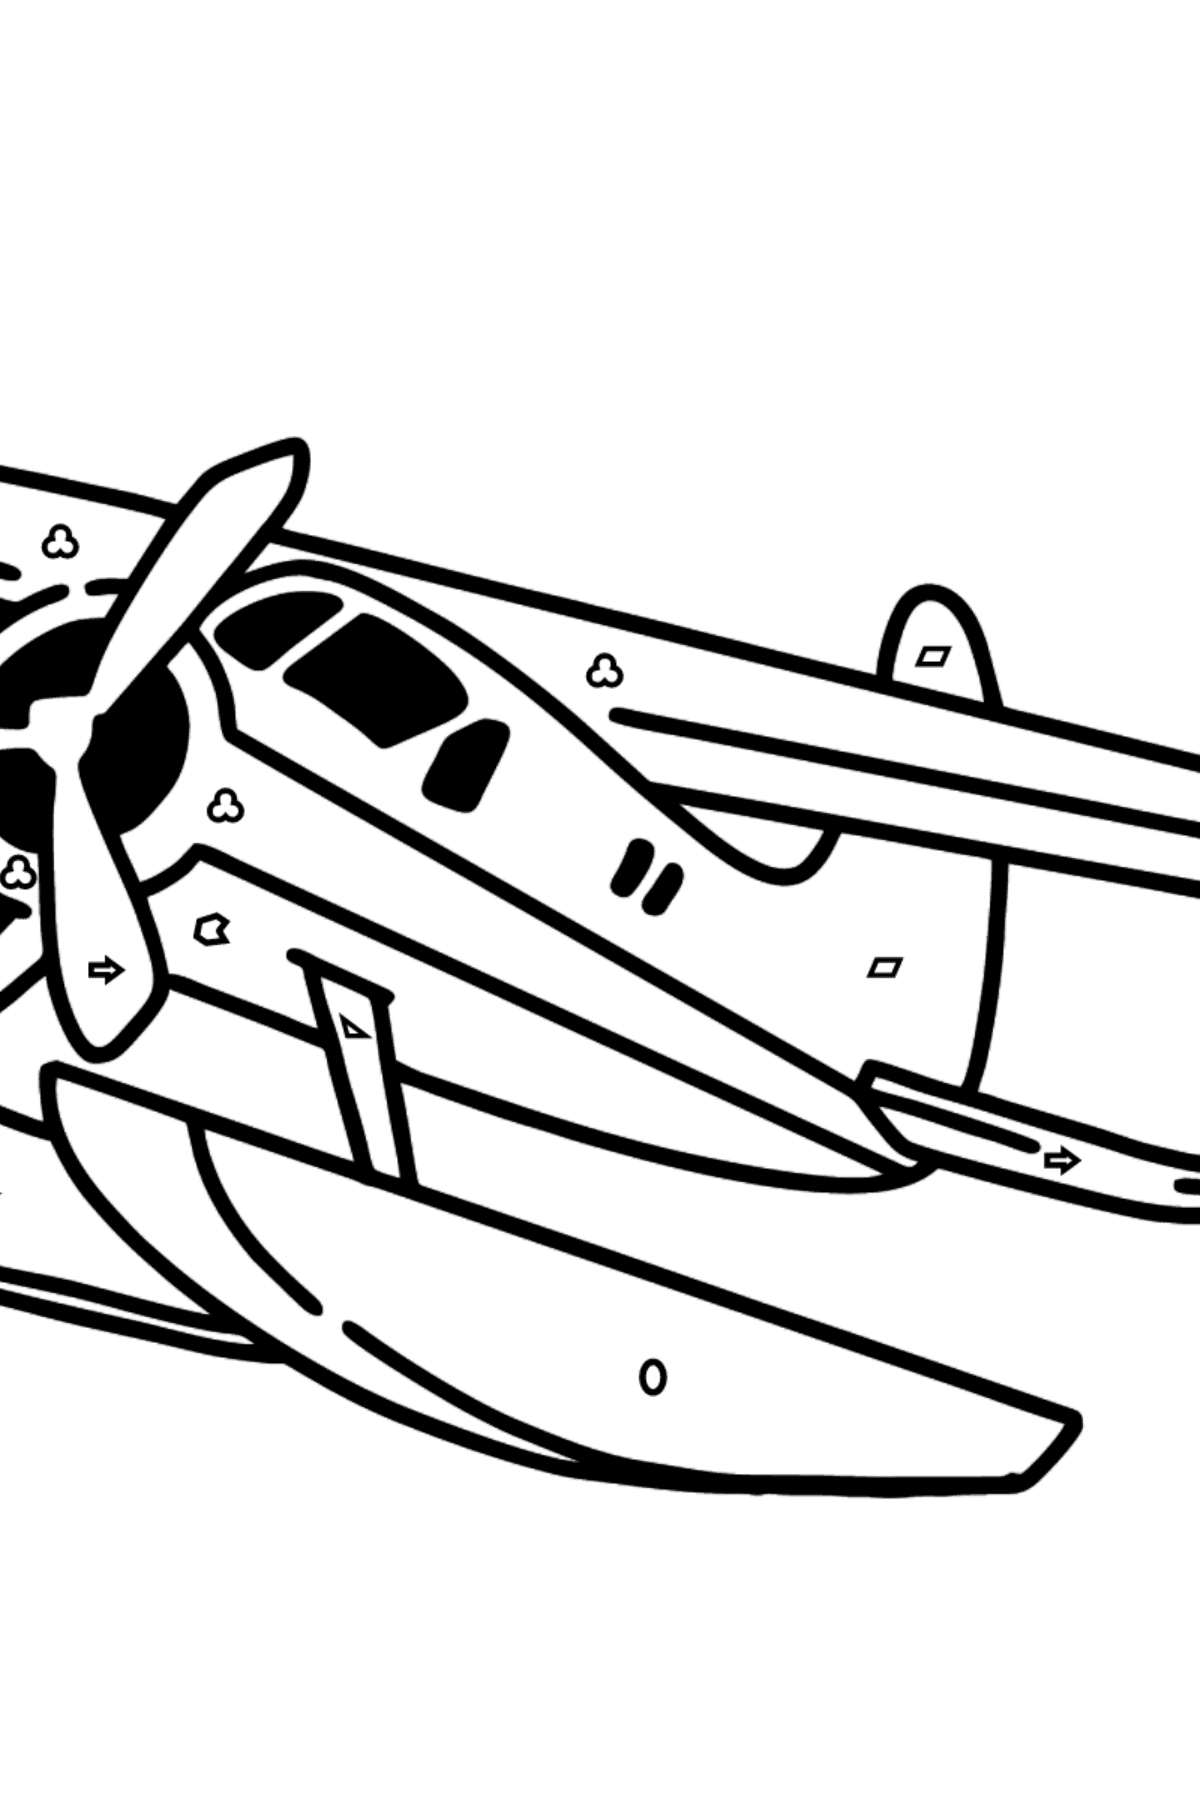 Desenho para colorir do Jet Airplane BE-200 - Colorir por Formas Geométricas para Crianças